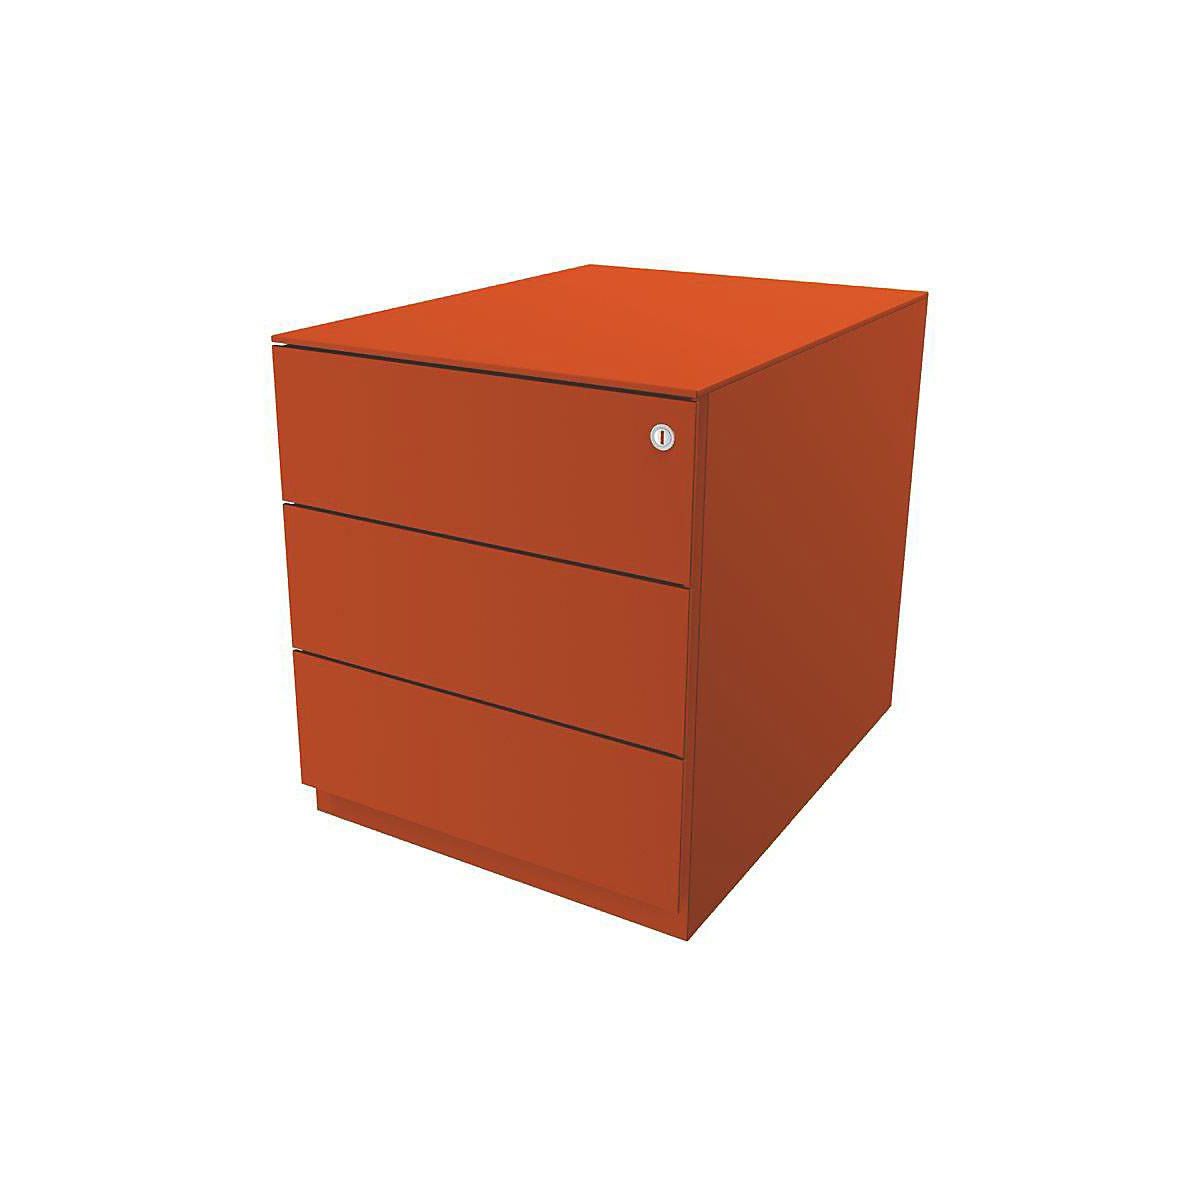 Pojazdný kontajner Note™, s 3 univerzálnymi zásuvkami – BISLEY, v x š x h 502 x 420 x 565 mm, s úchopnou lištou a hornou doskou, oranžová-12